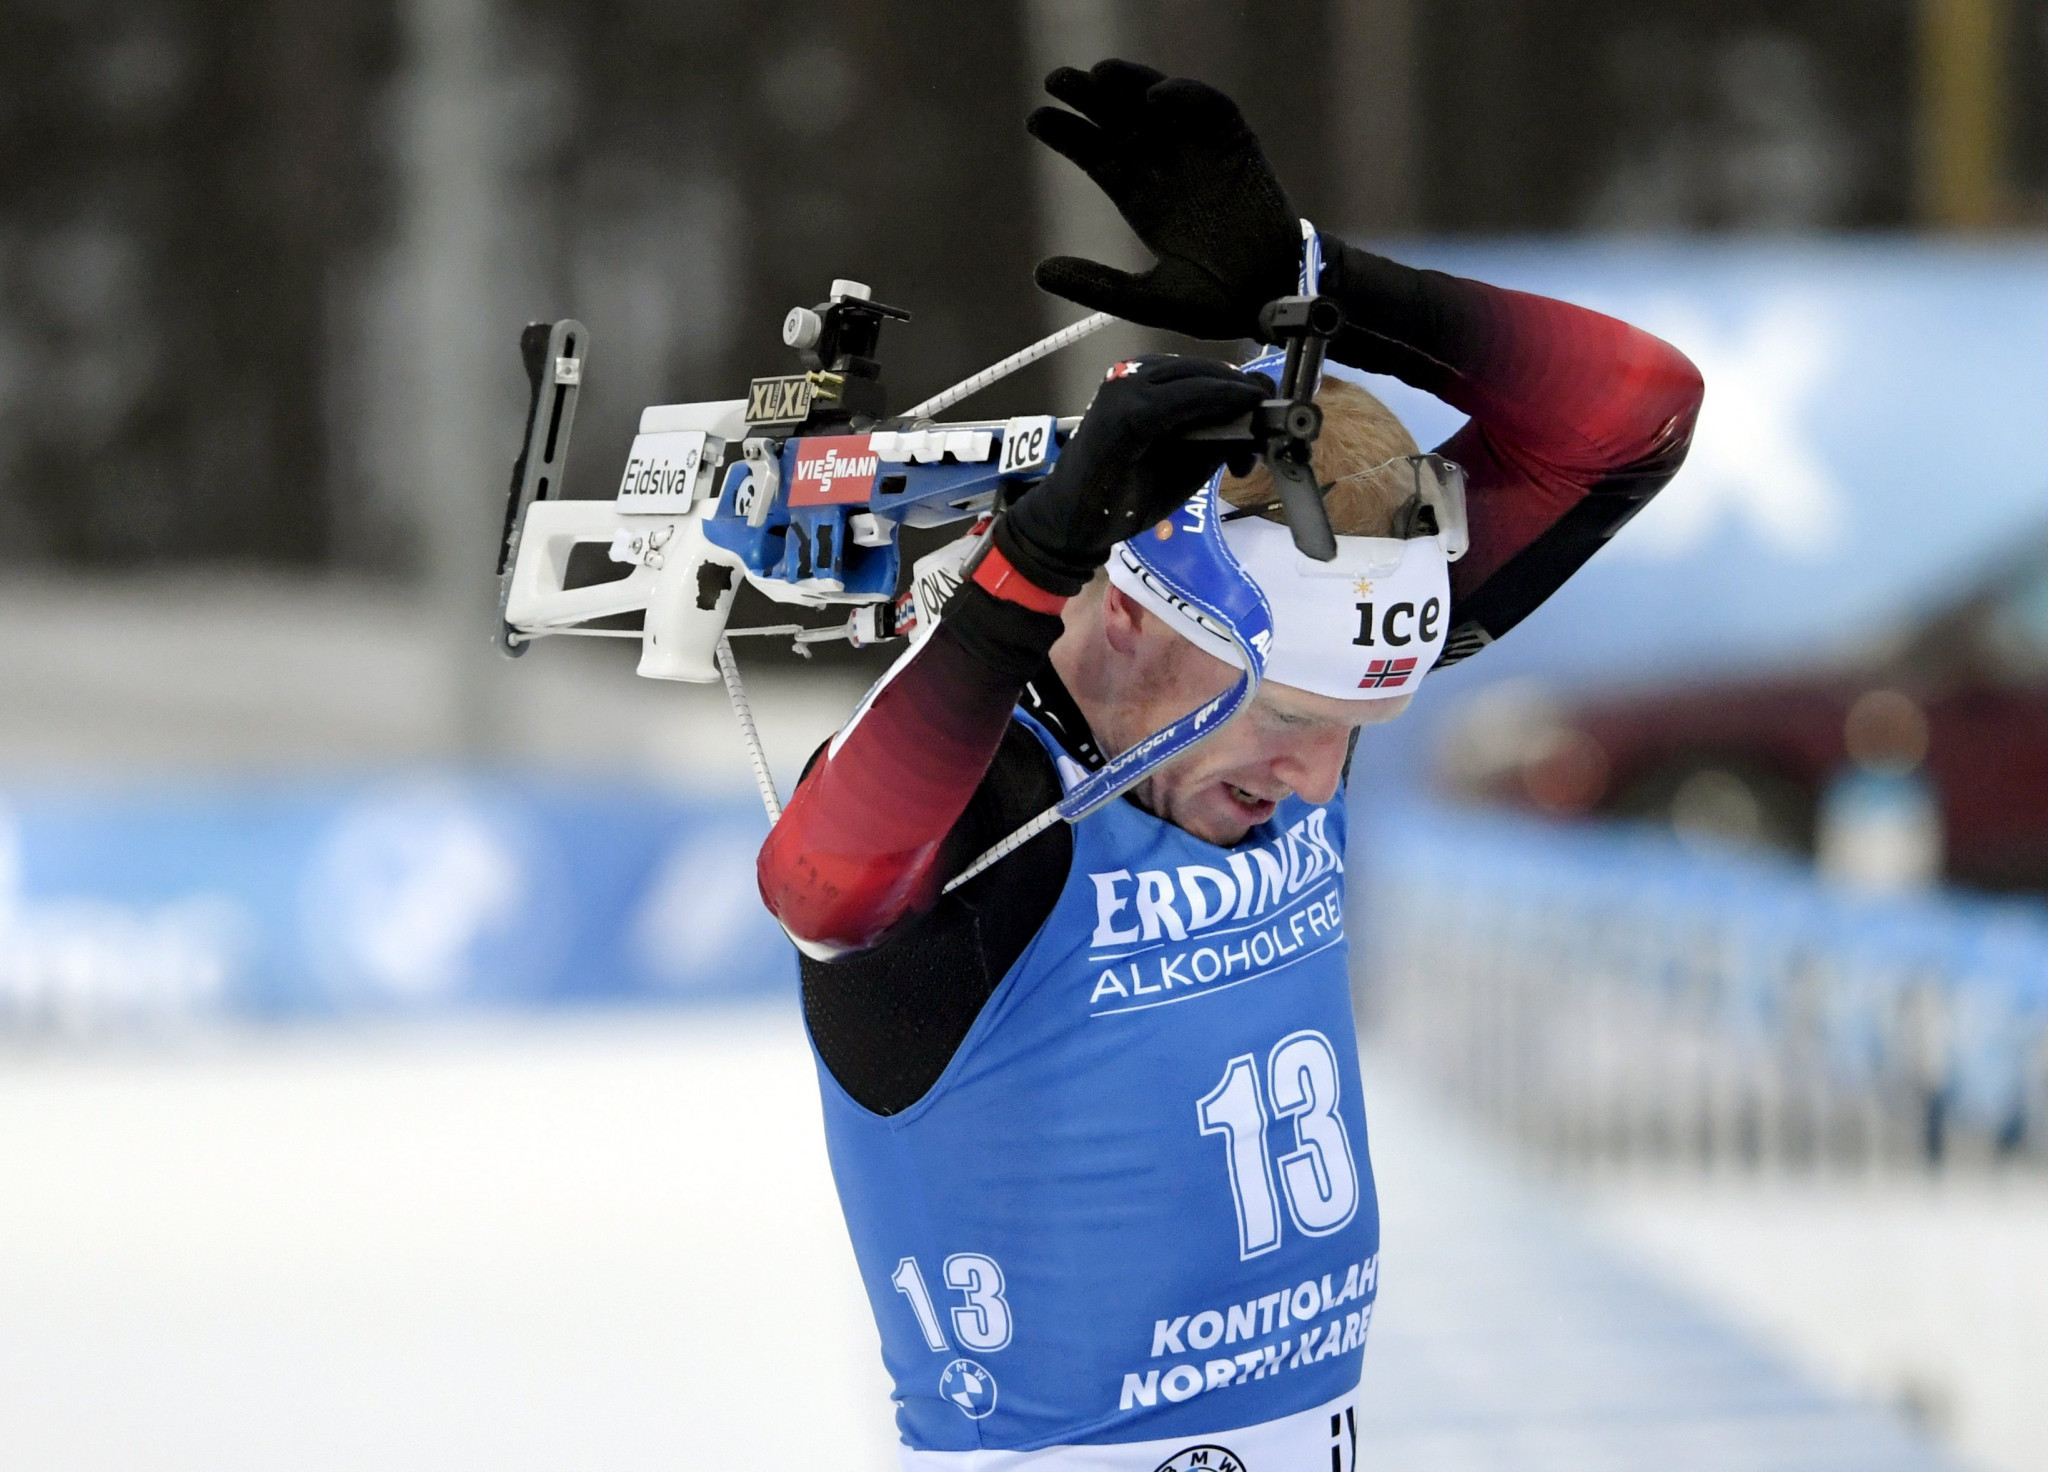 Boe and Oeberg secure sprint victories at IBU World Cup in Kontiolahti